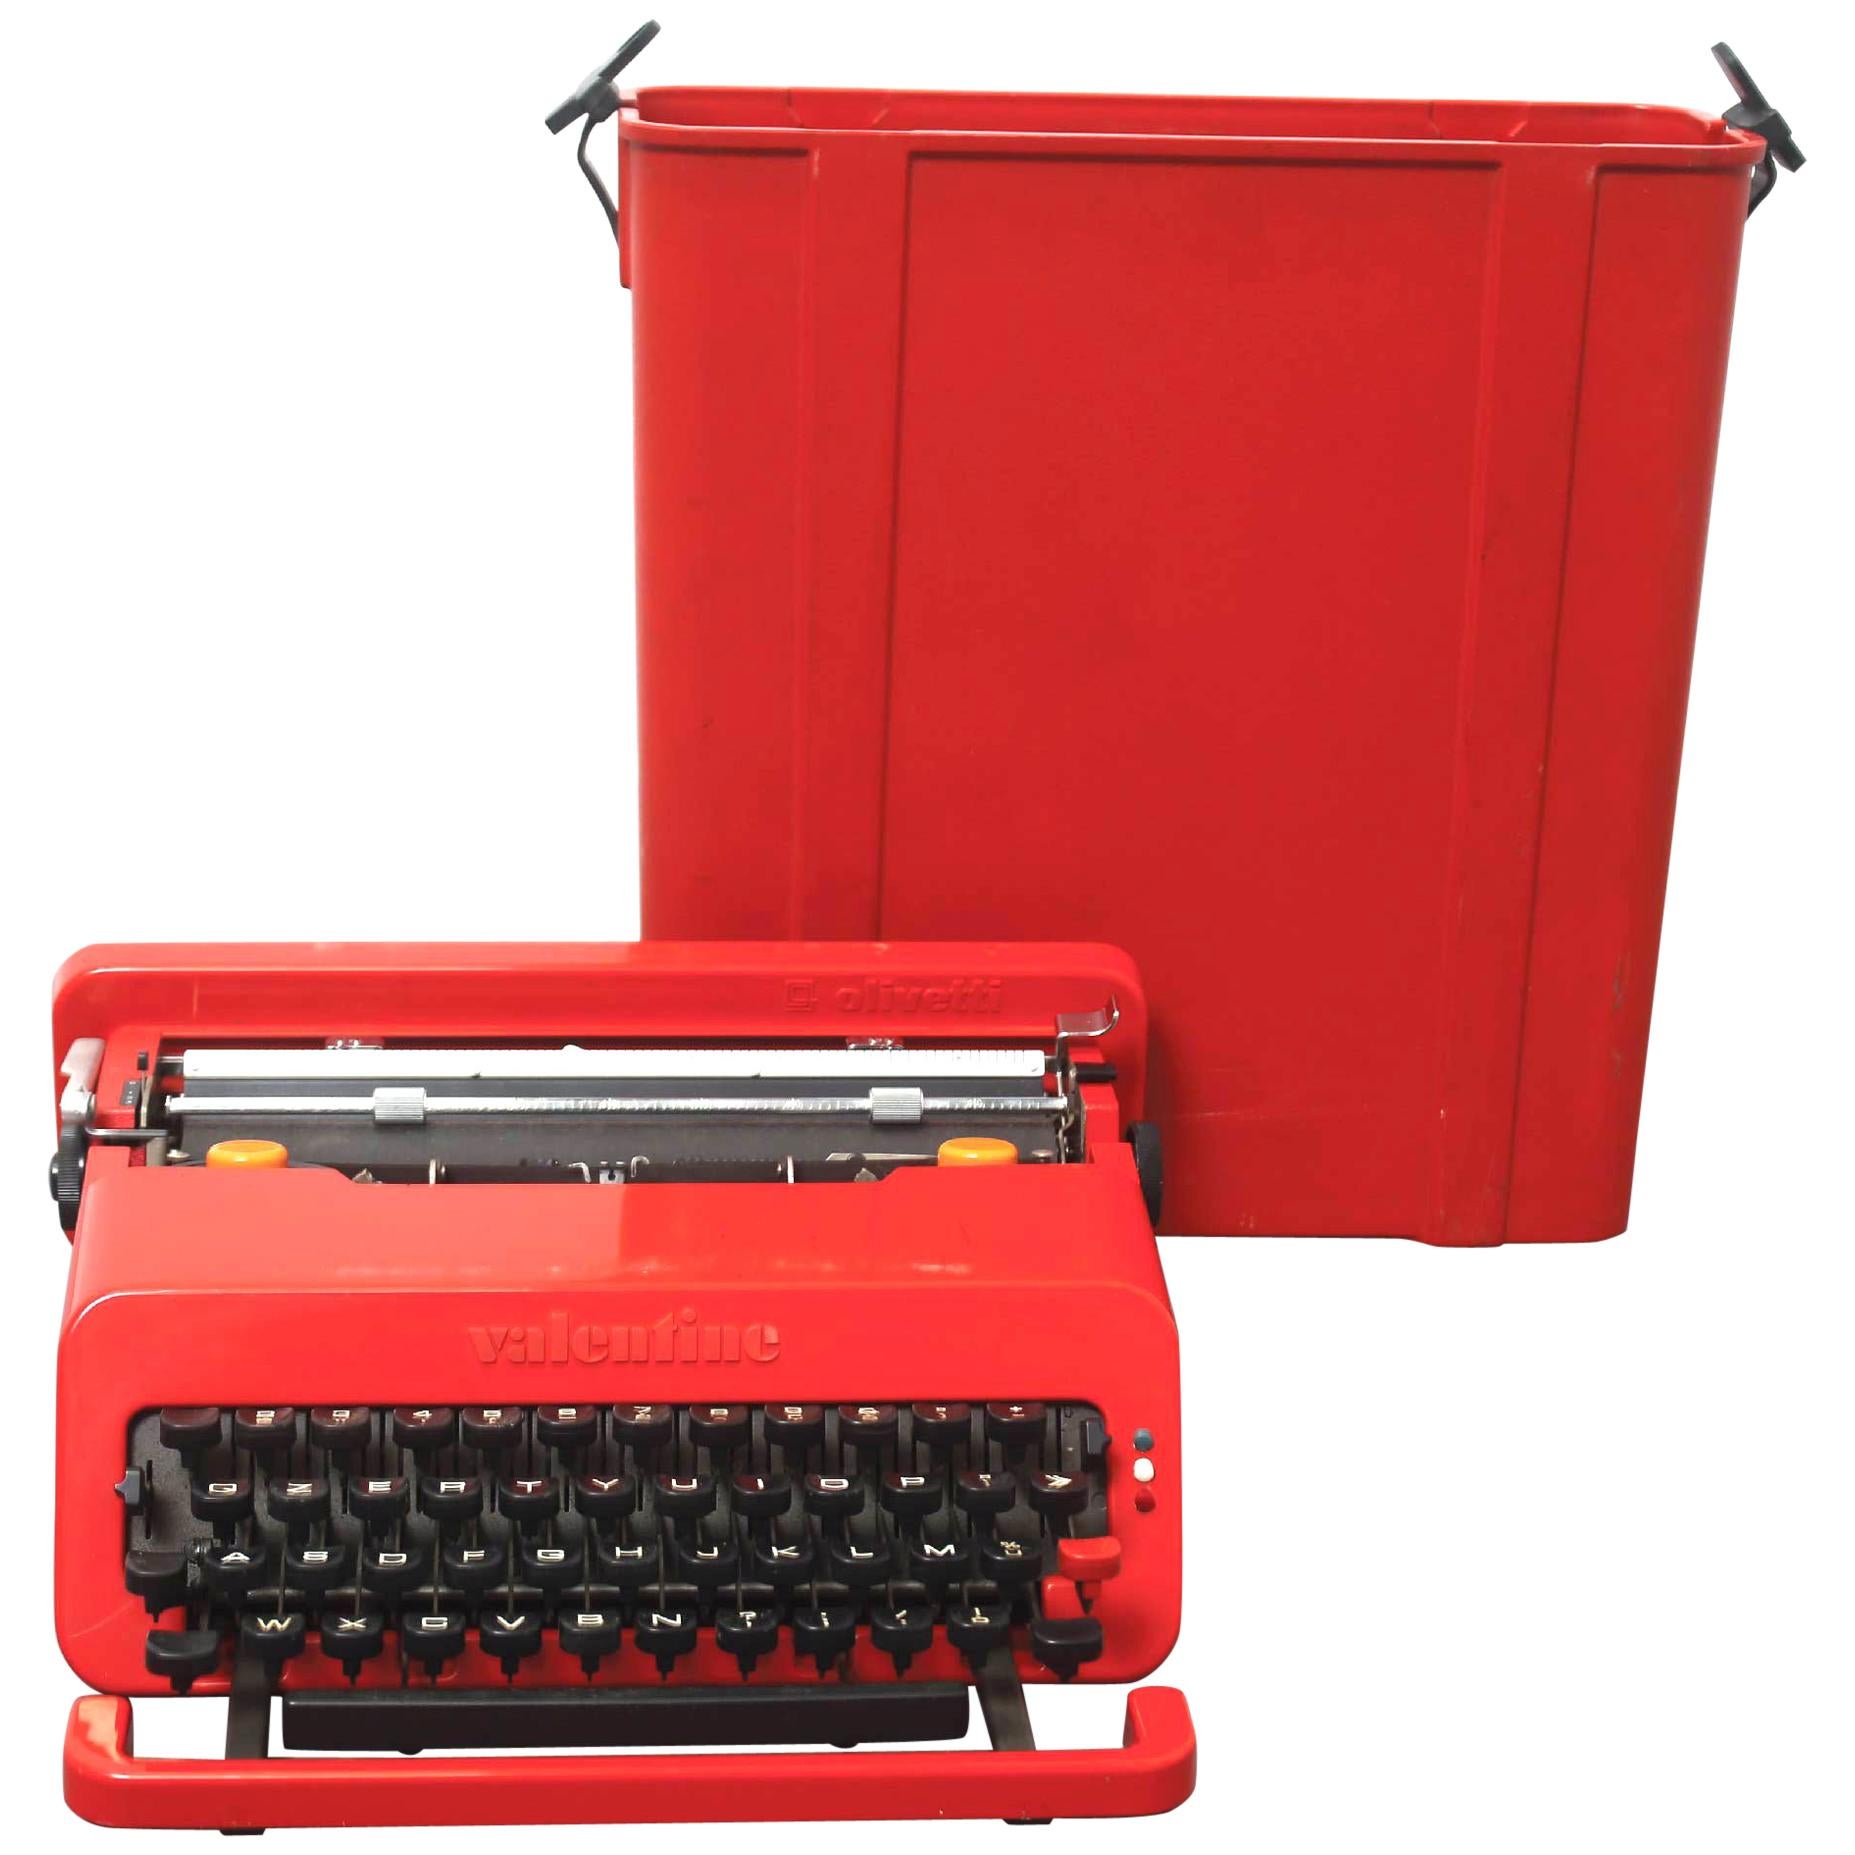 Olivetti "Valentine" Typewriter by Ettore Sottsass